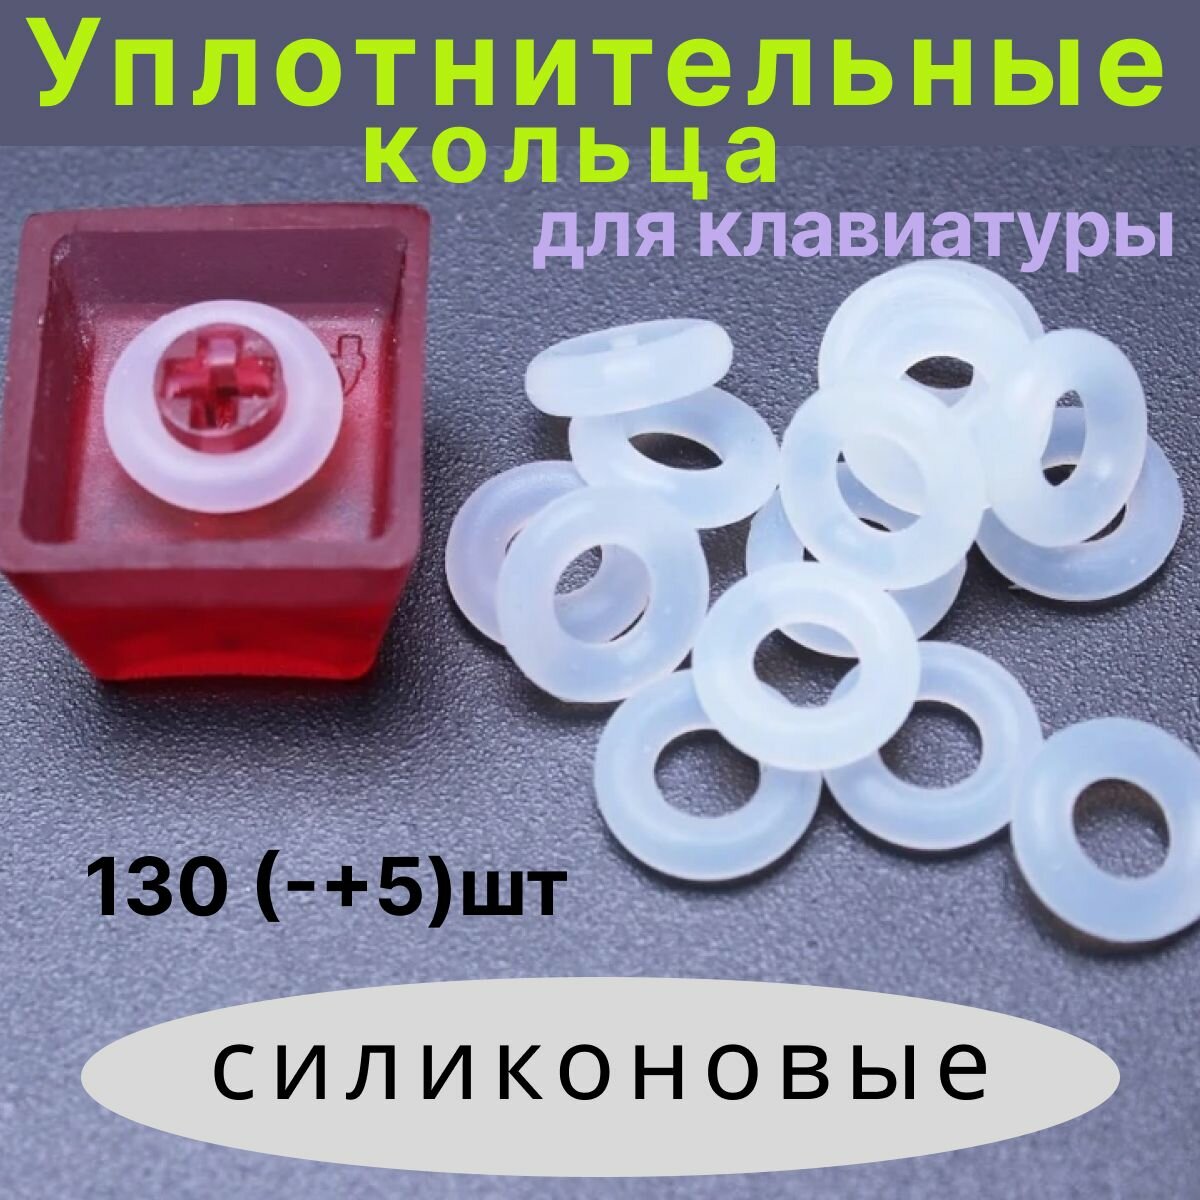 Уплотнительные кольца для клавиатуры силиконовые (130 +/- 5 шт.)